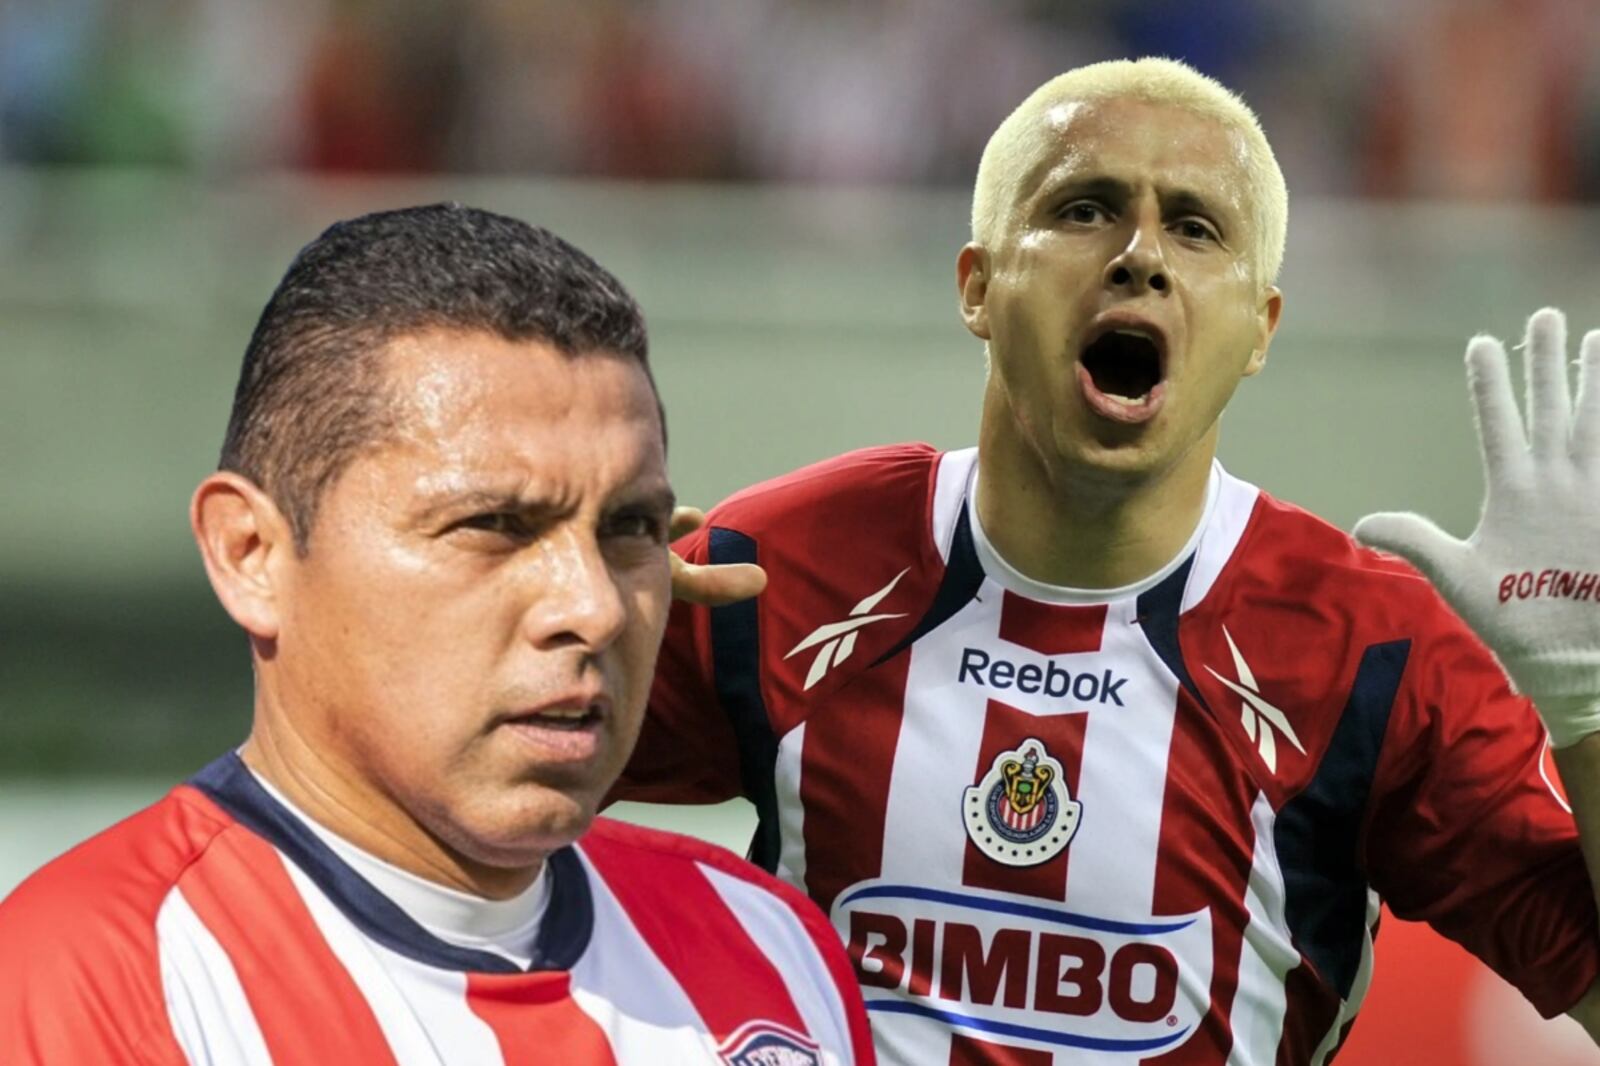 El jugador de Chivas se le veía como el nuevo Bofo Bautista, según Ramón Morales